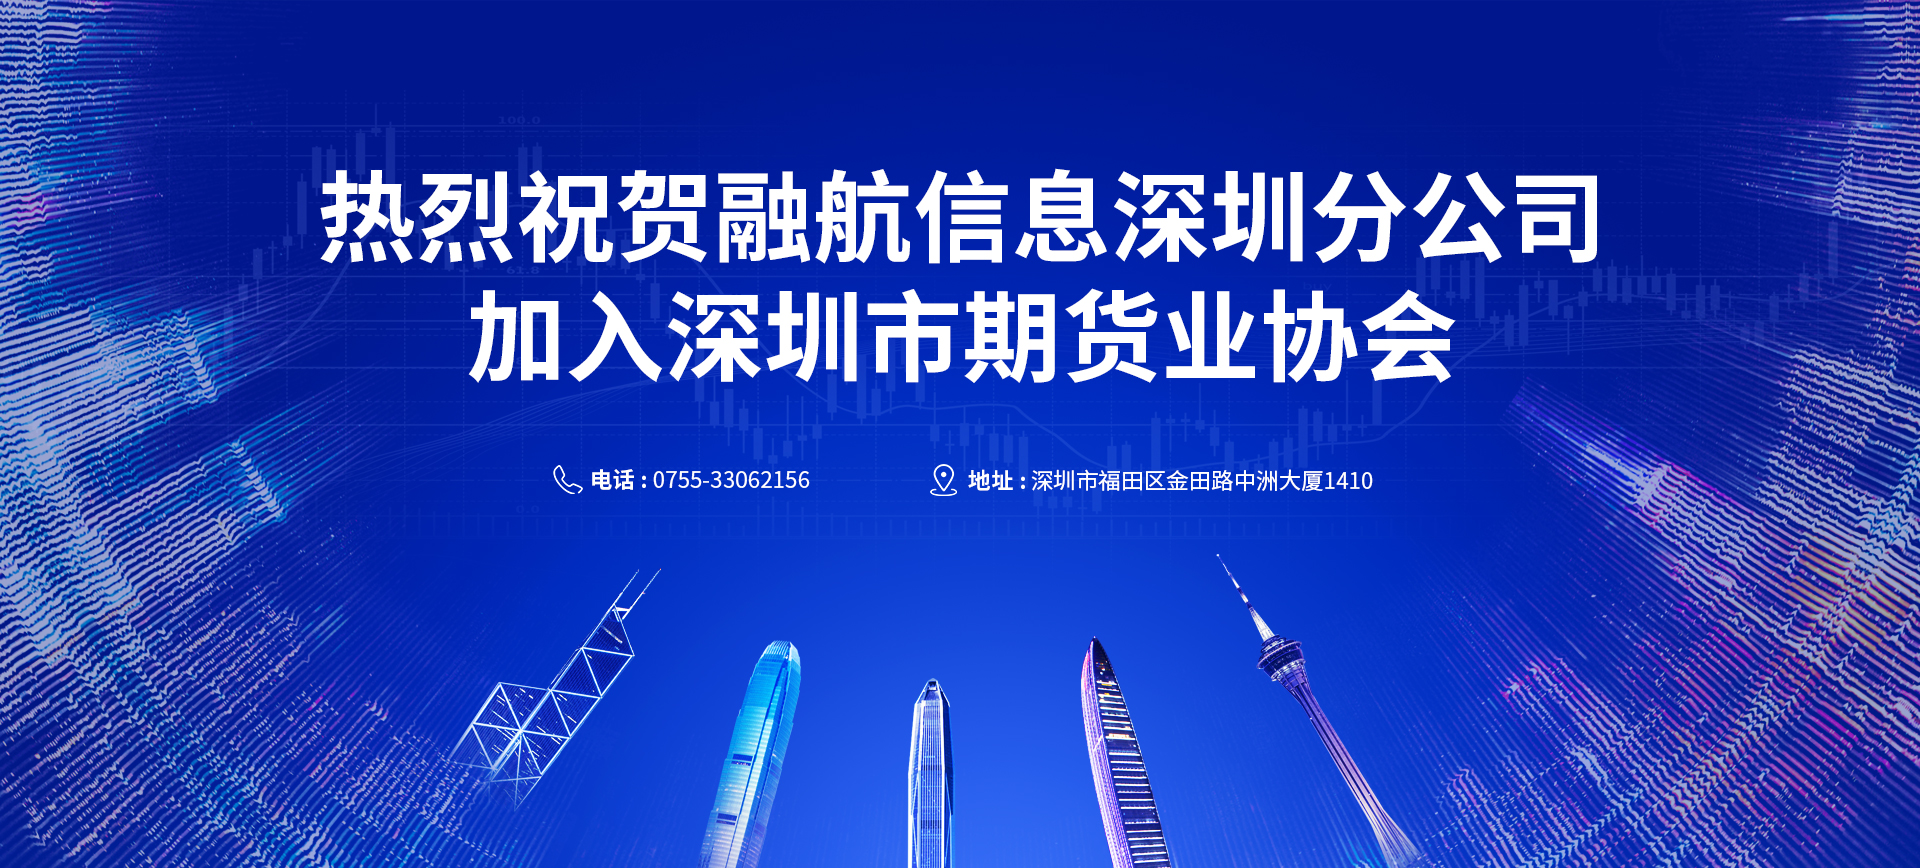 深圳分公司加入深圳市期货业协会